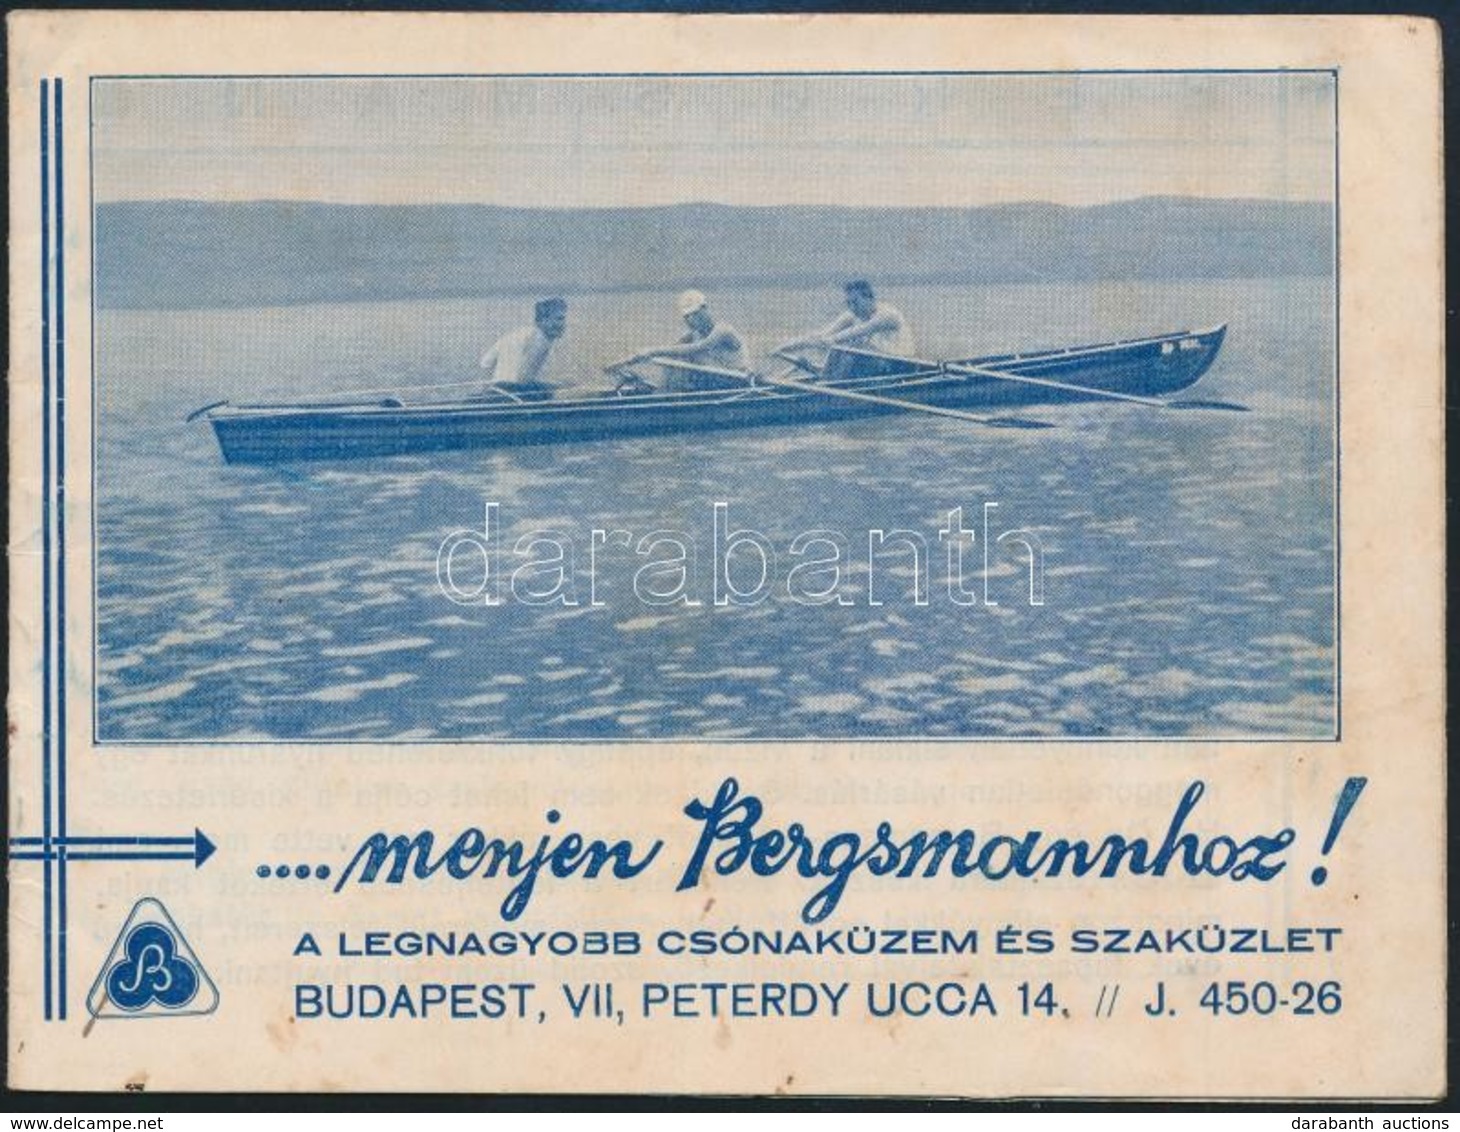 Bergsmann Csónaküzem és Szaküzlet árjegyzék - Publicités